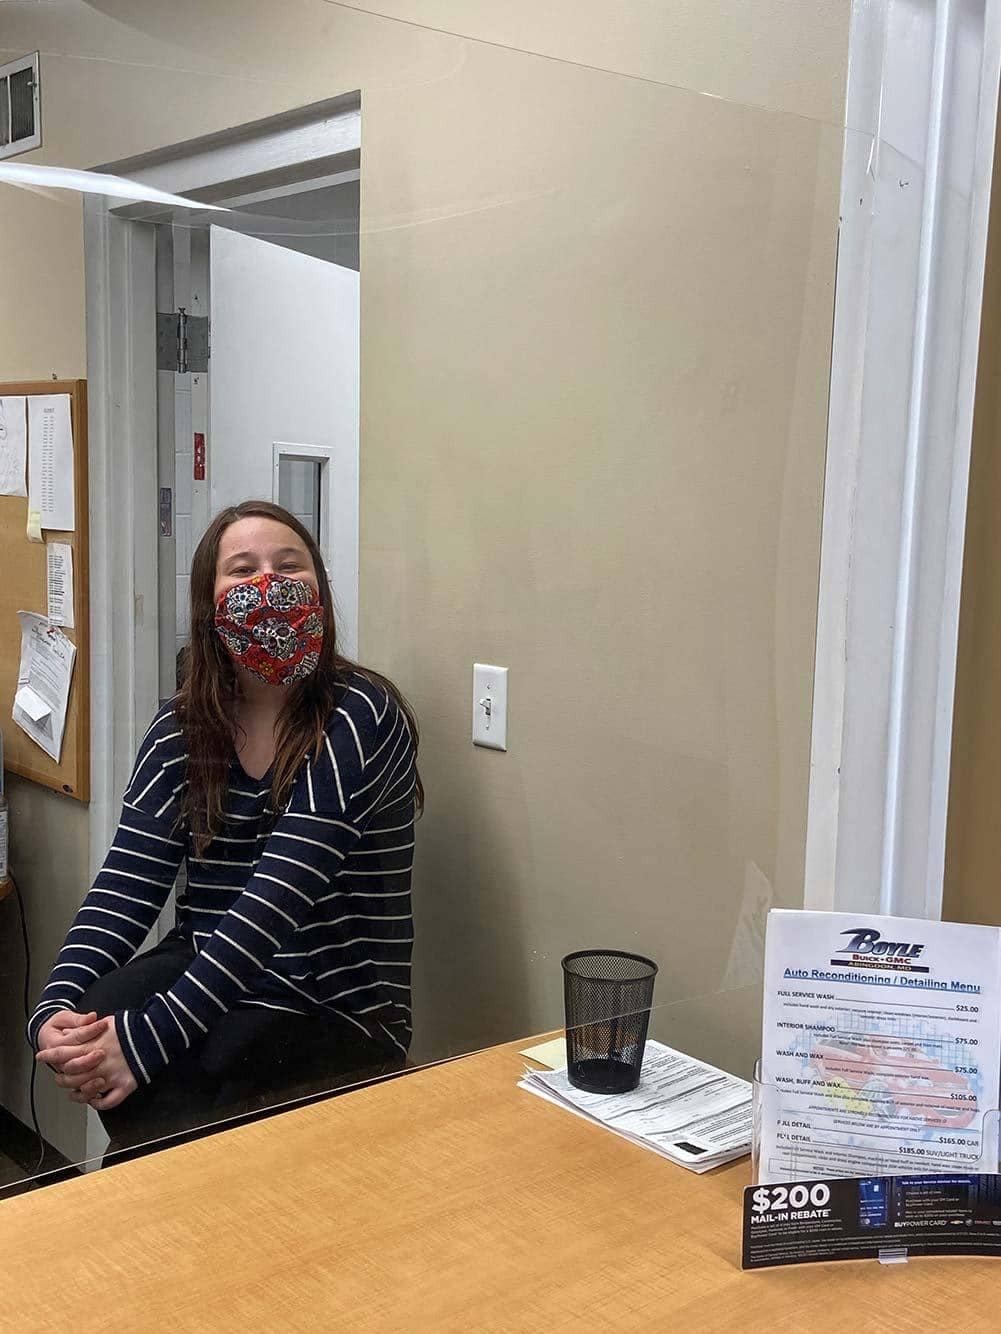 Dealership employee wearing mask